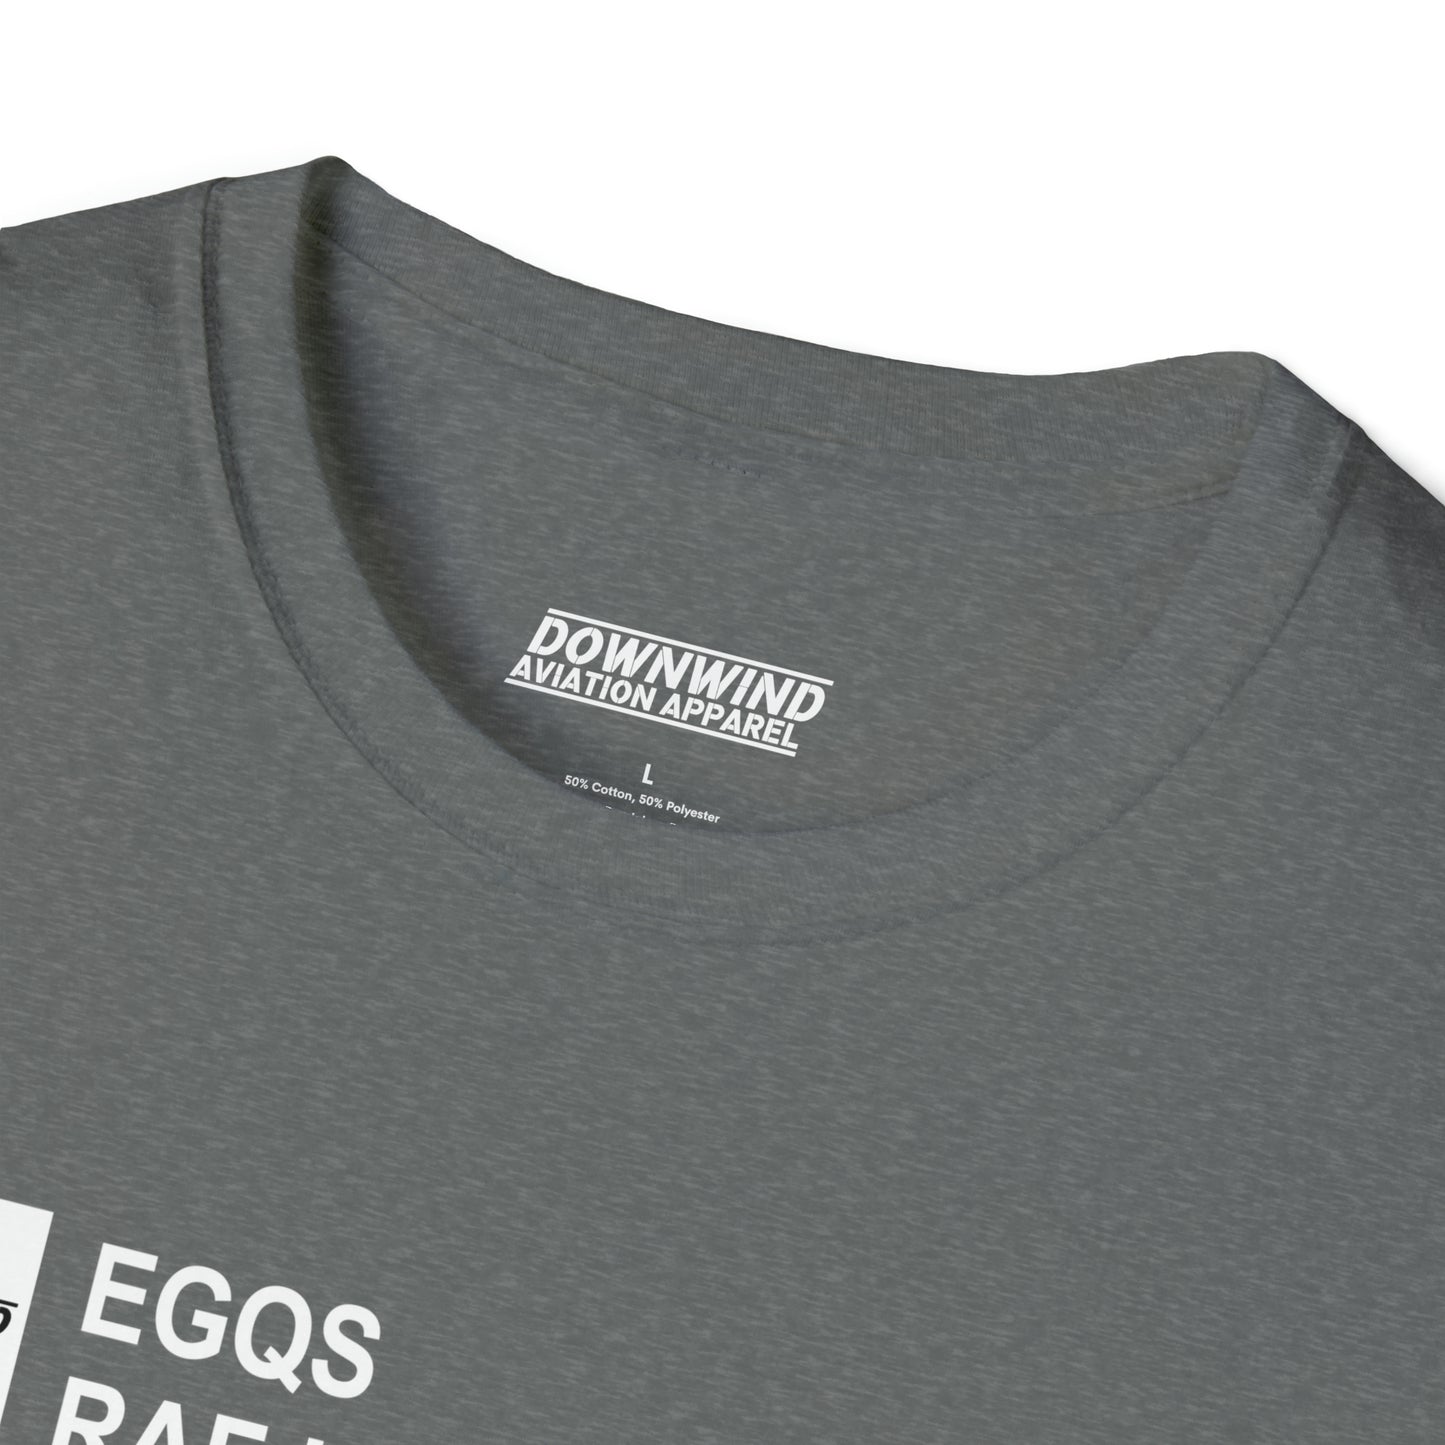 EGQS / RAF Lossiemouth T-Shirt